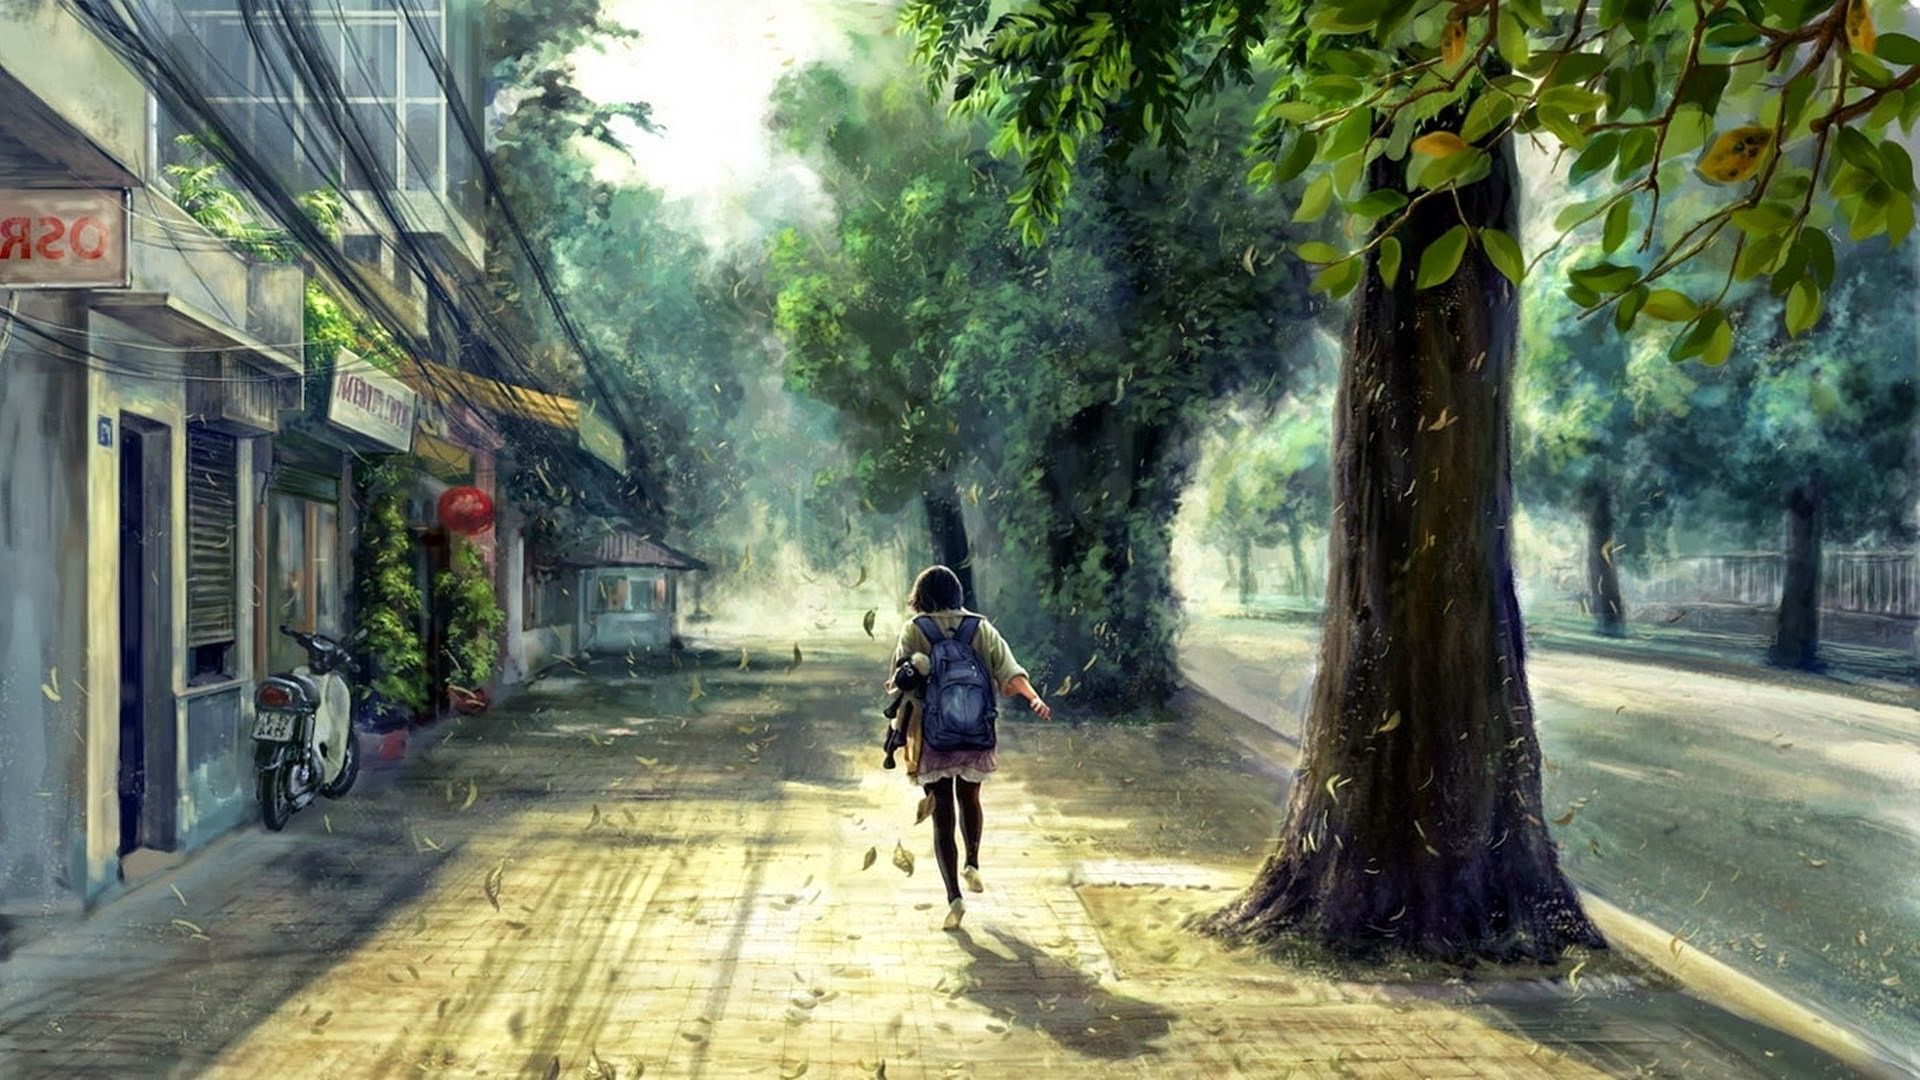 Anime girl Wallpaper 4K Girly backgrounds Surreal Fairy 9793